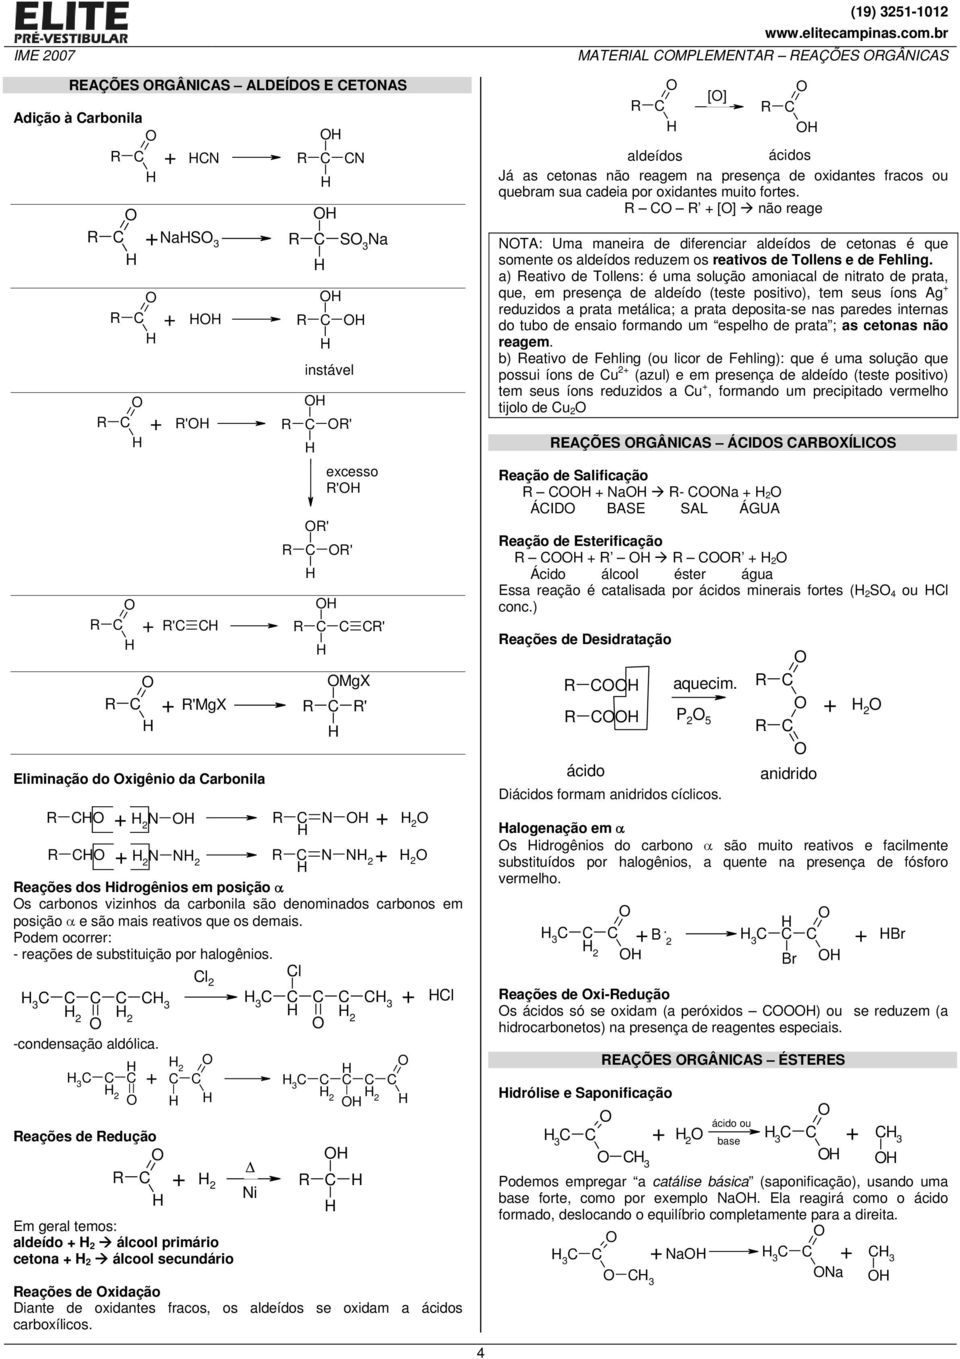 eações de edução i Em geral temos: aldeído álcool primário cetona álcool secundário eações de xidação Diante de oxidantes fracos, os aldeídos se oxidam a ácidos carboxílicos.